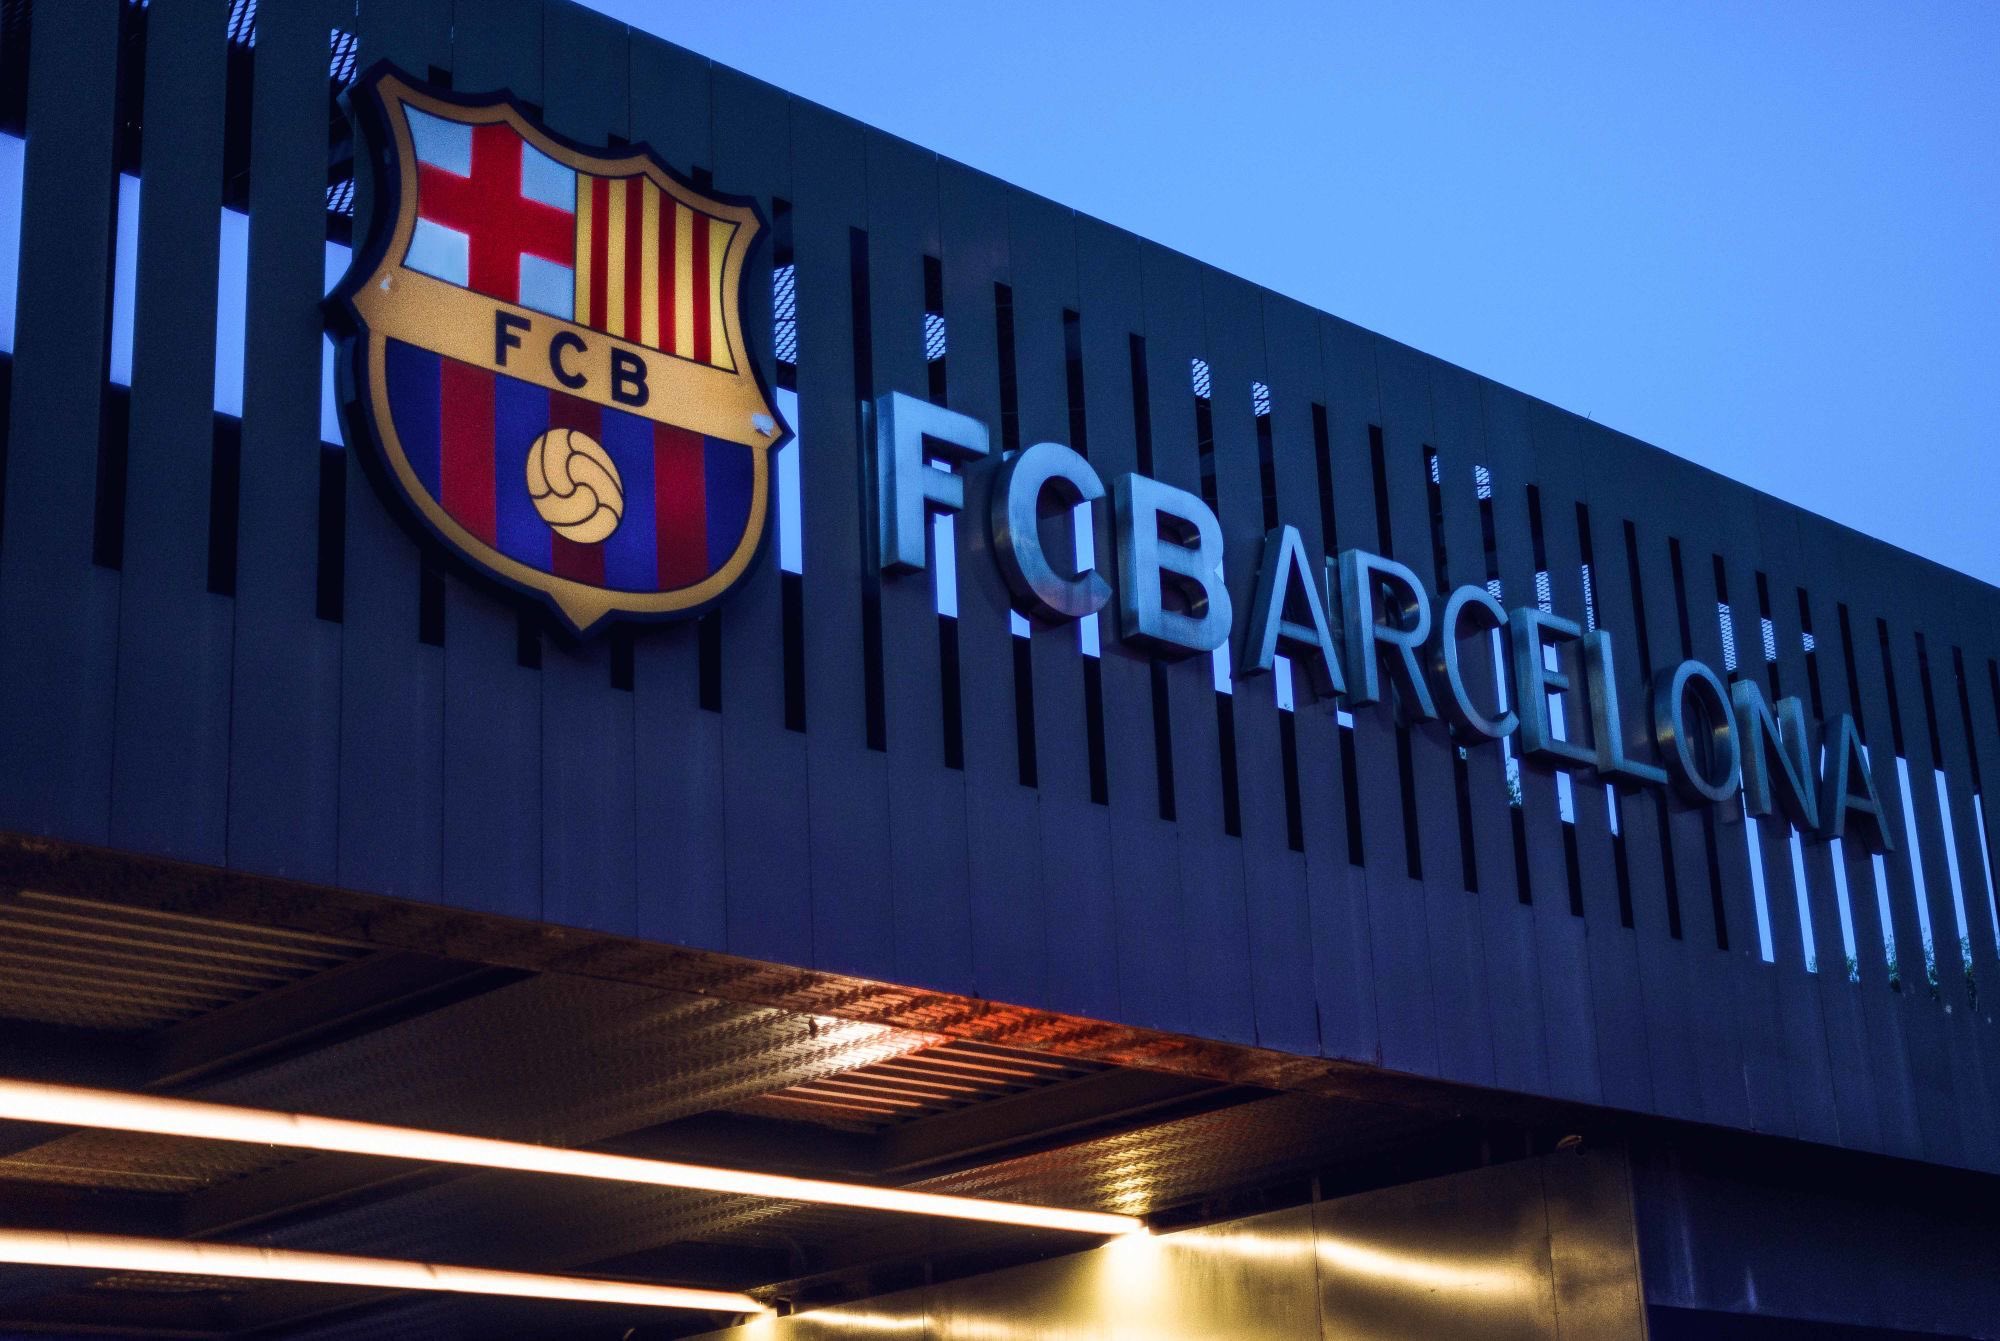 Affaire Negreira : La mise au point du fisc espagnol après son enquête sur le FC Barcelone !